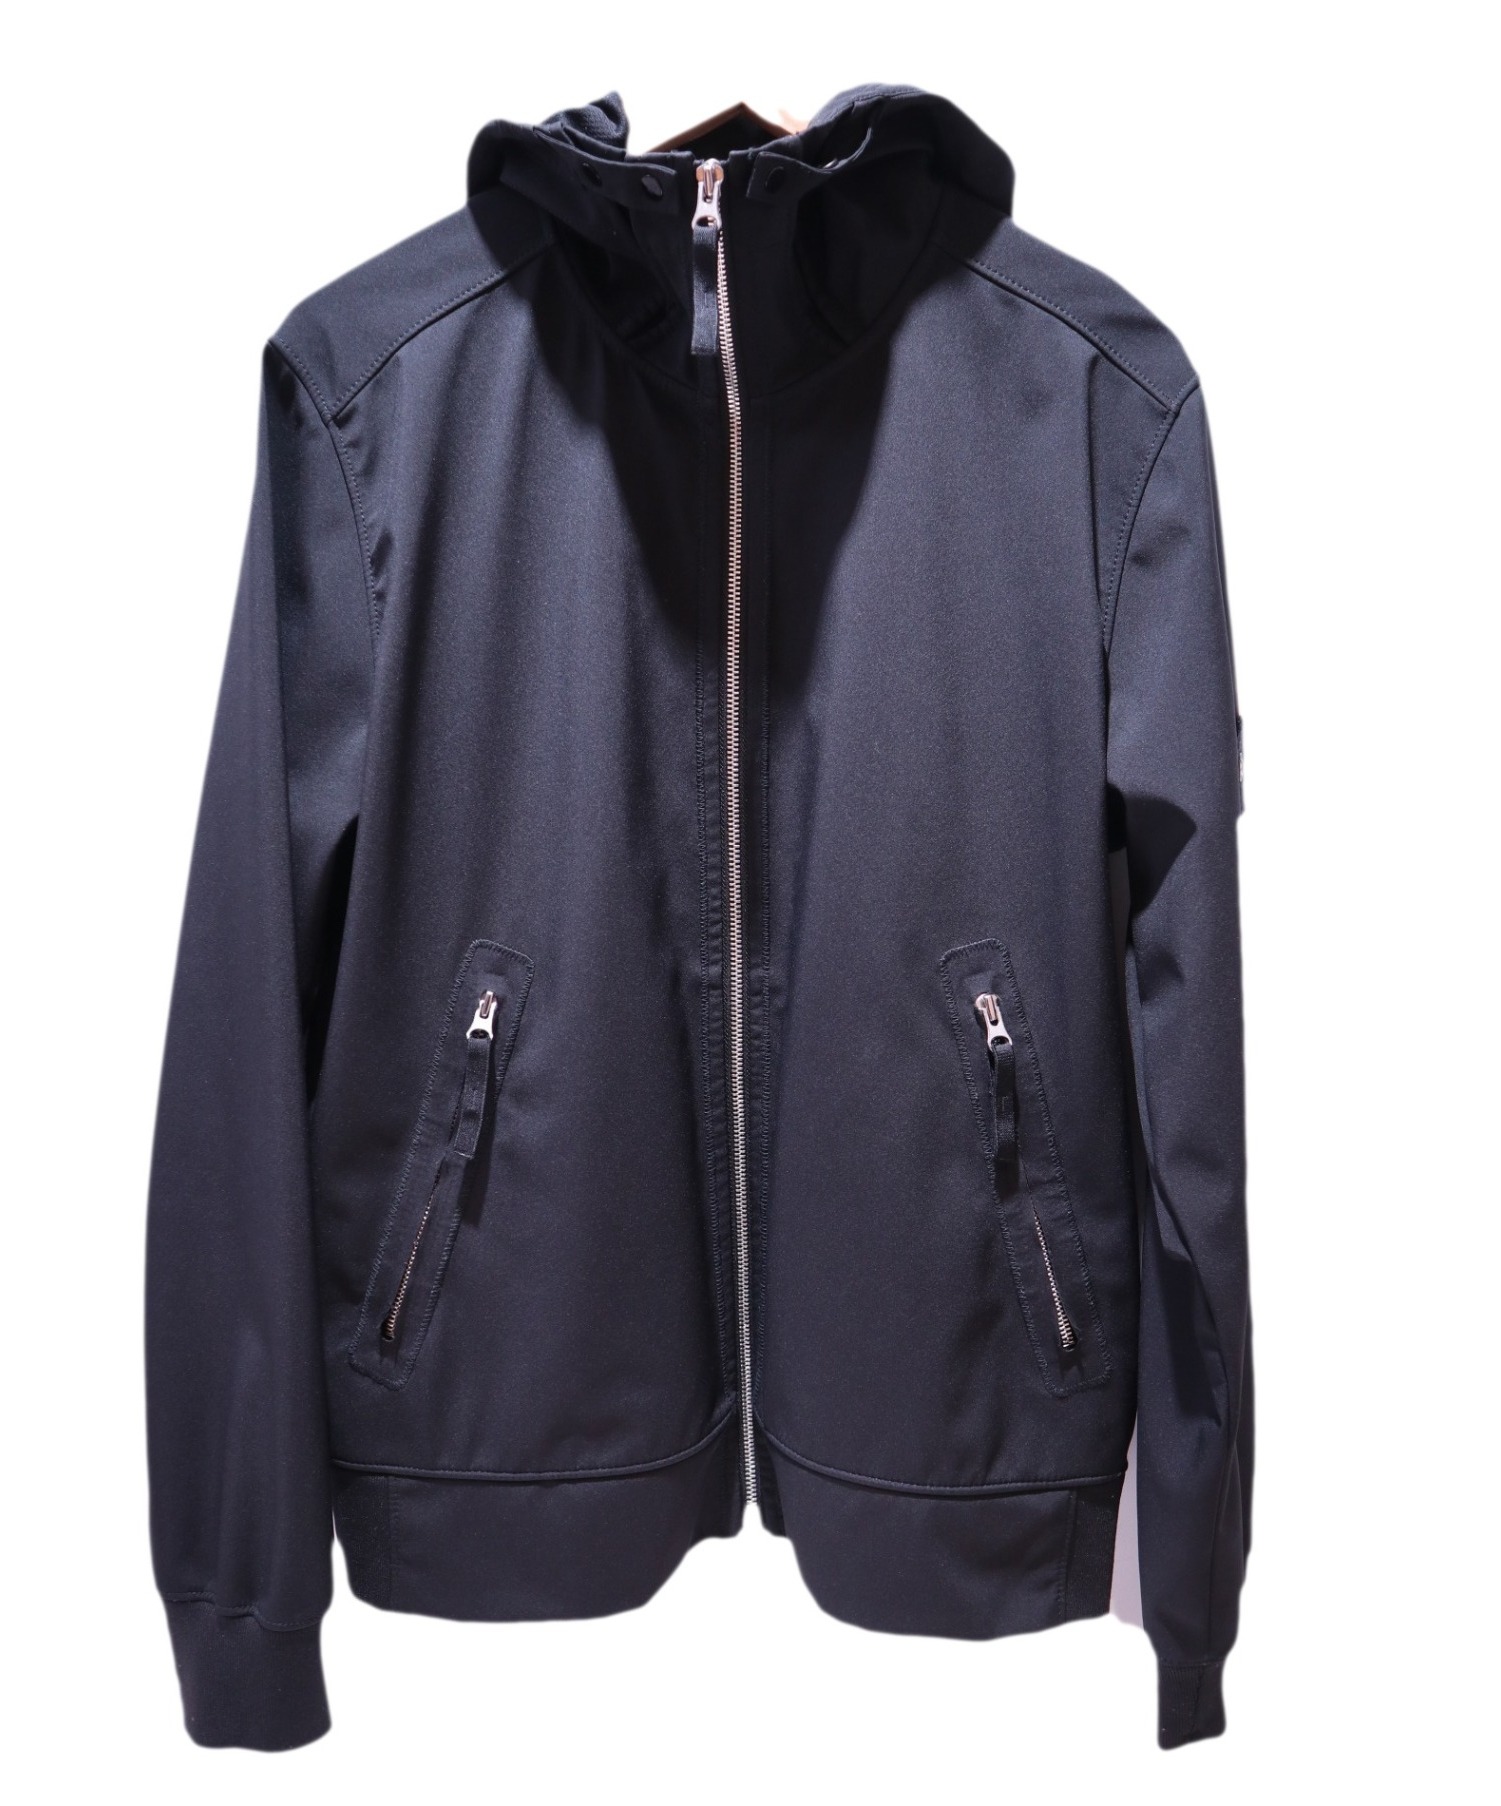 STONE ISLAND (ストーンアイランド) フーデッドジャケット ブラック サイズ:M